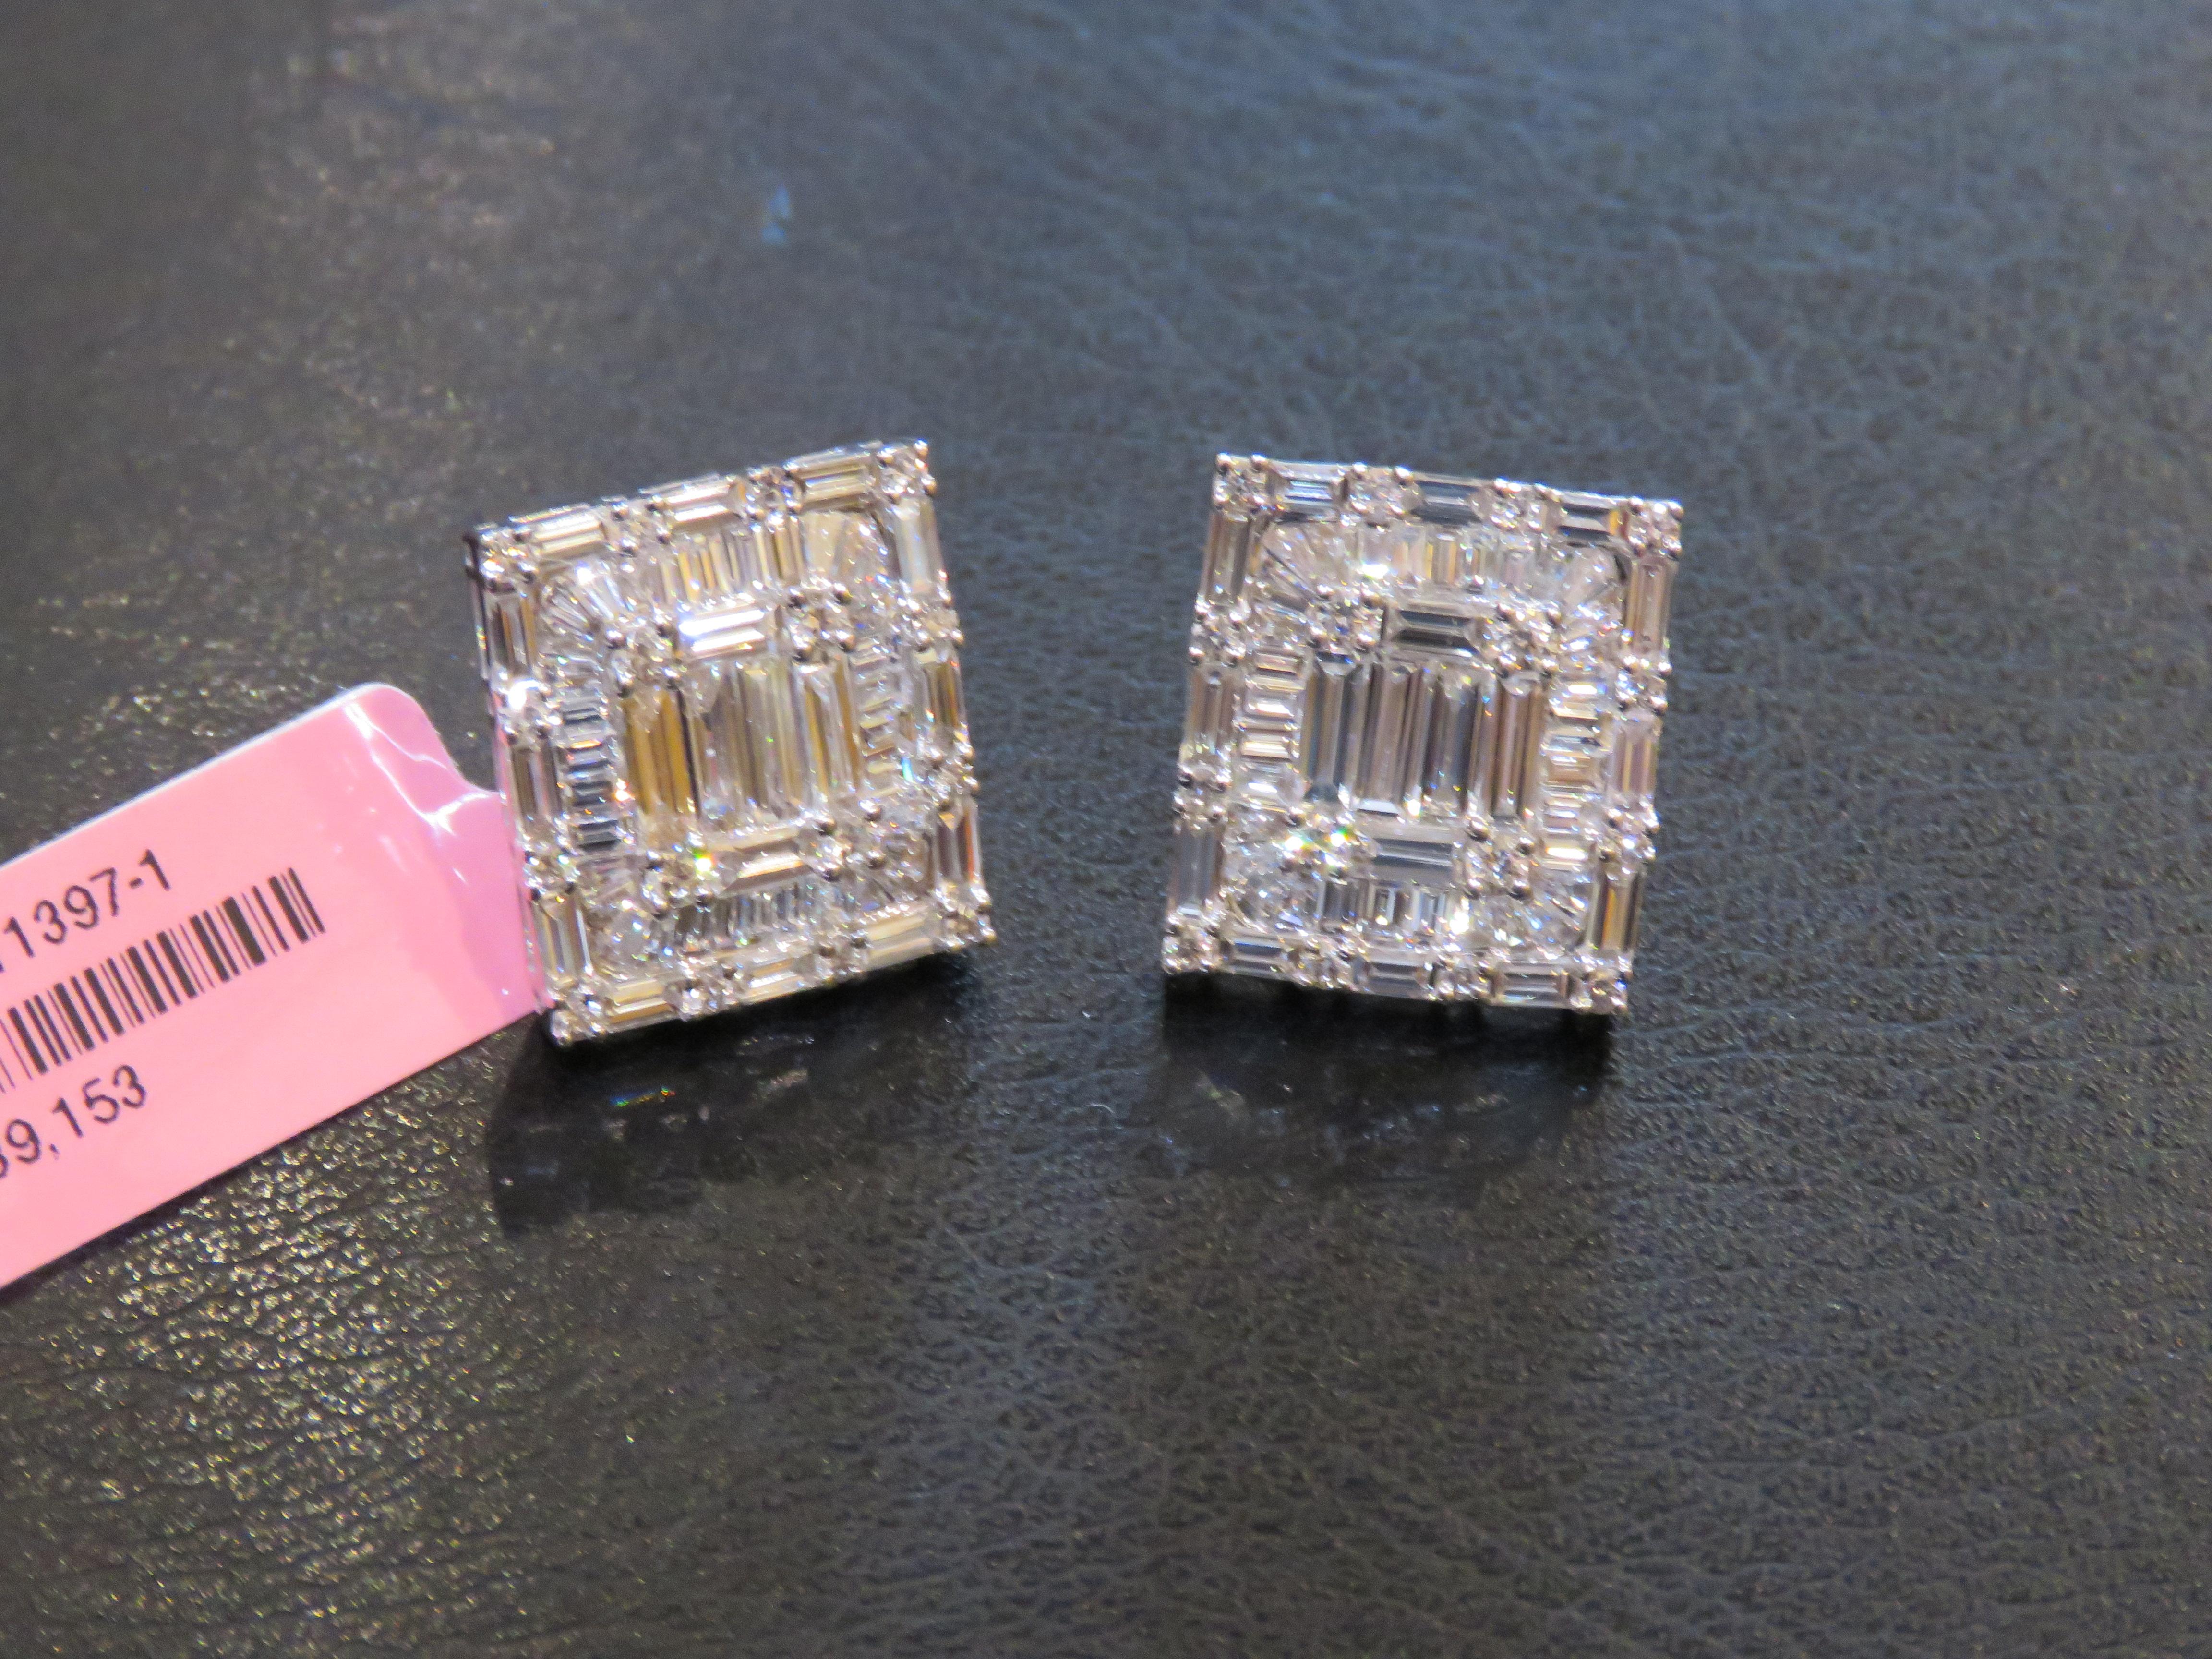 Der folgende Artikel, den wir anbieten, sind diese schönen wichtigen seltenen 18KT Weißgold Brilliant Large 4CT Emerald Cut Diamond Stud Earrings. Jeder Ohrring ist prächtig mit einem wunderschönen Halo verziert und besteht aus prächtig glitzernden